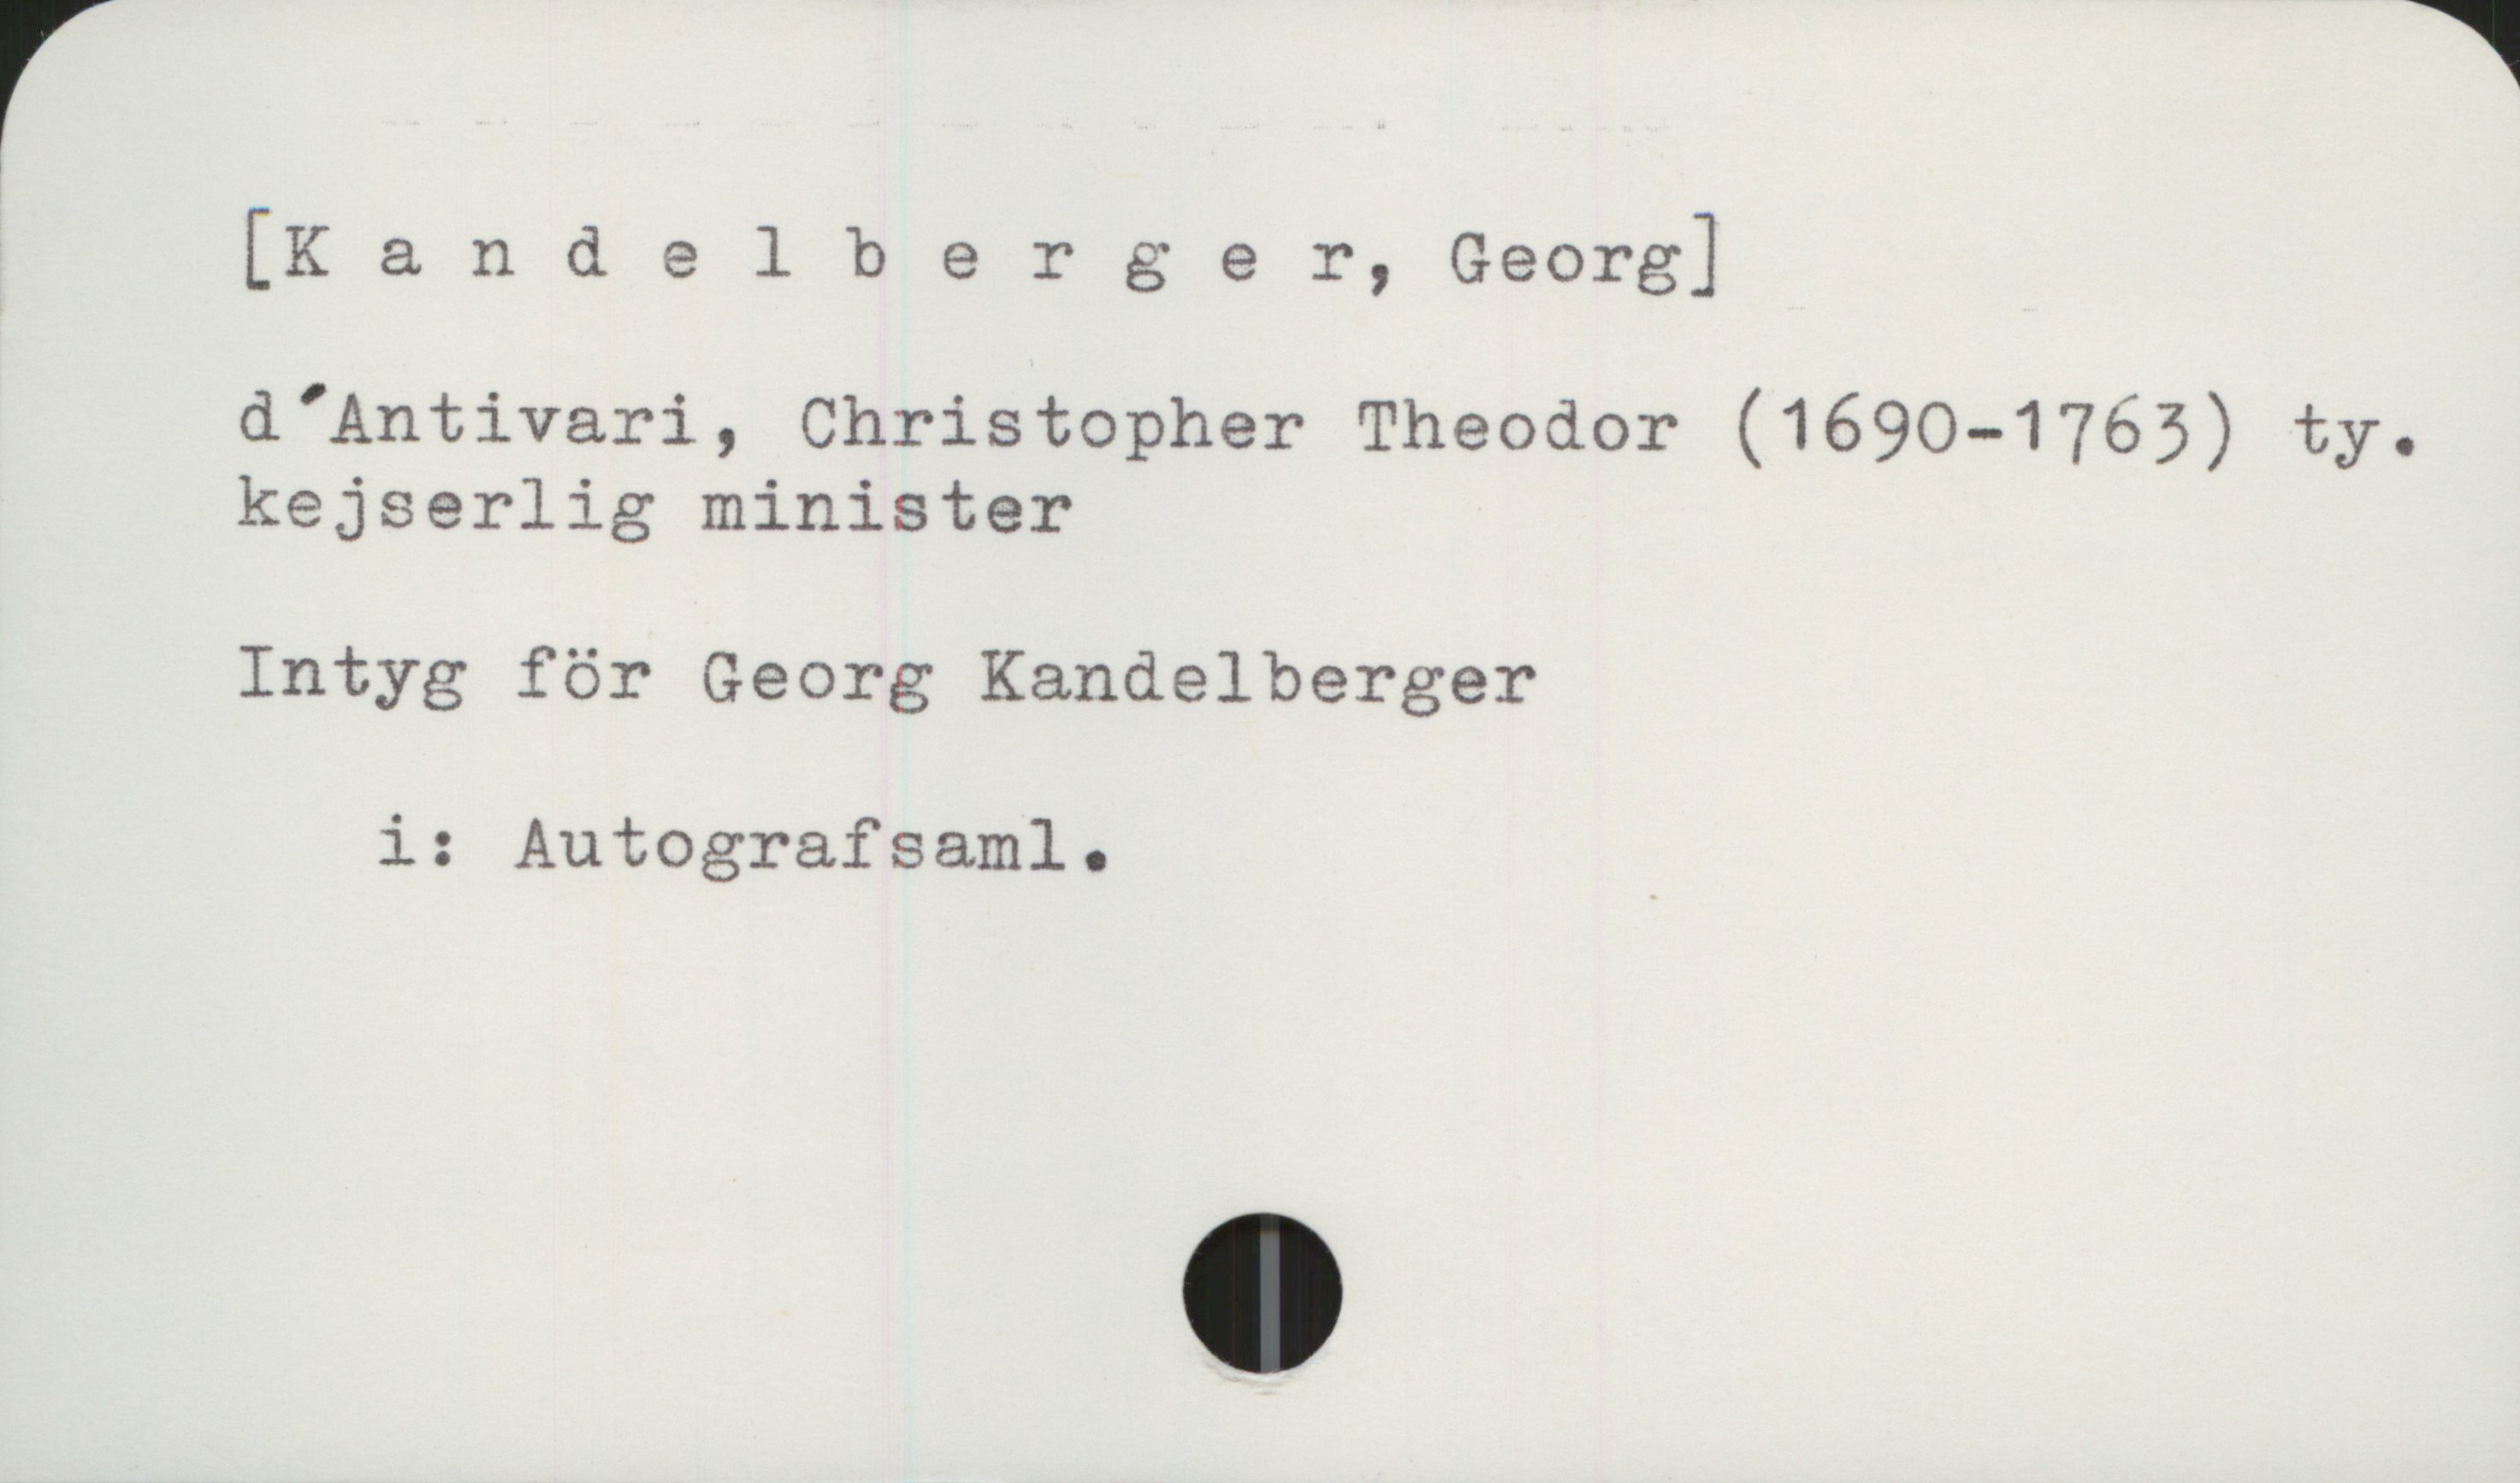  [Kandelberger, Georg]
d *Antivari, Christopher Theodor (1690-1763) ty.
kejserlig minister
Intyg för Georg Kandelberger
i: Autografsaml. )

